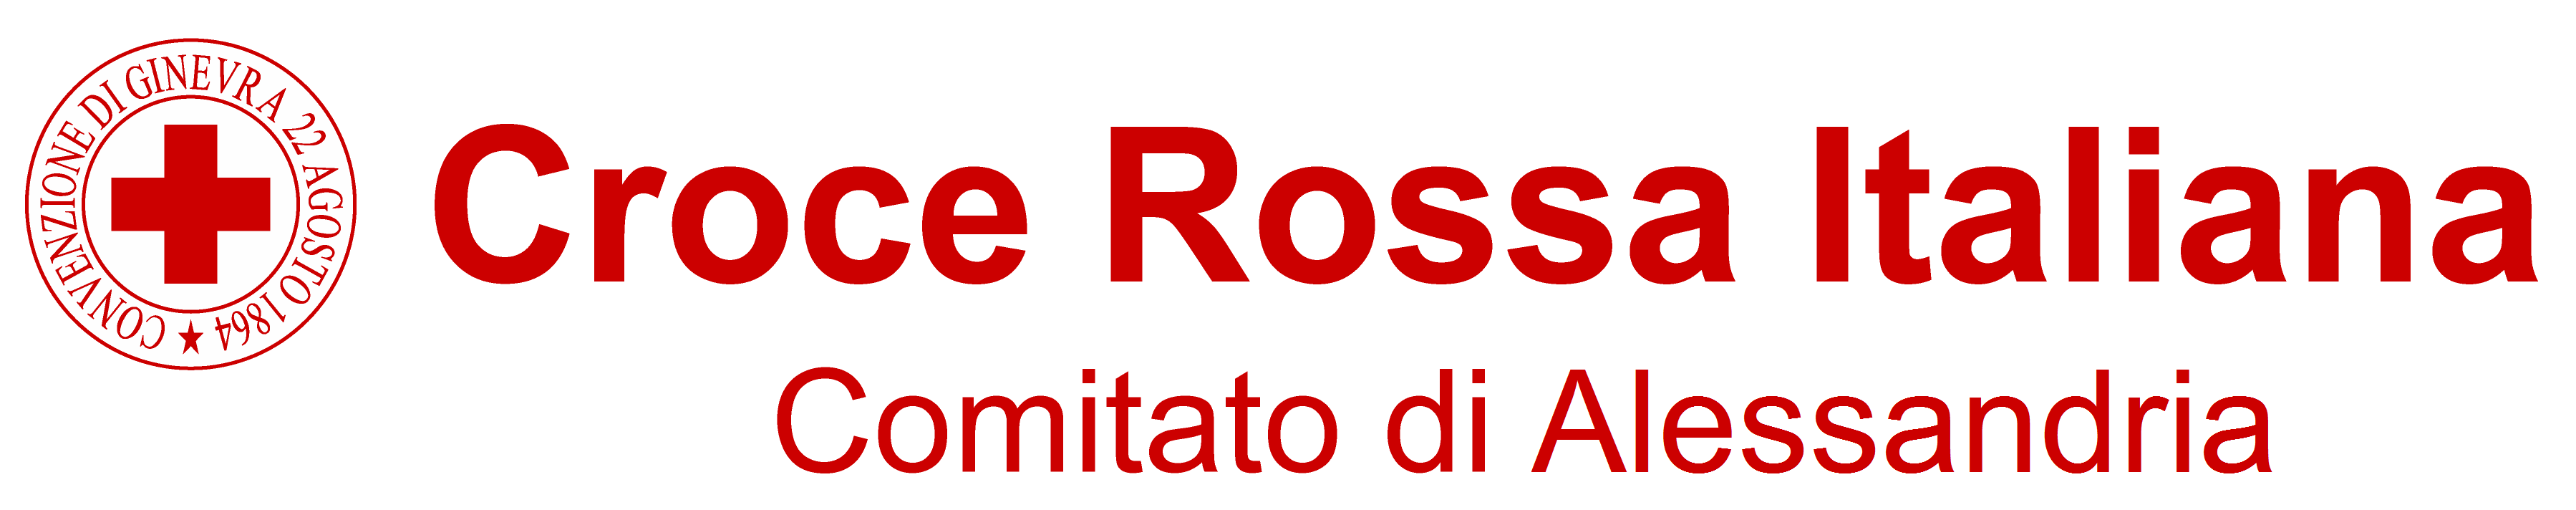 Croce Rossa Italiana - Comitato di Alessandria